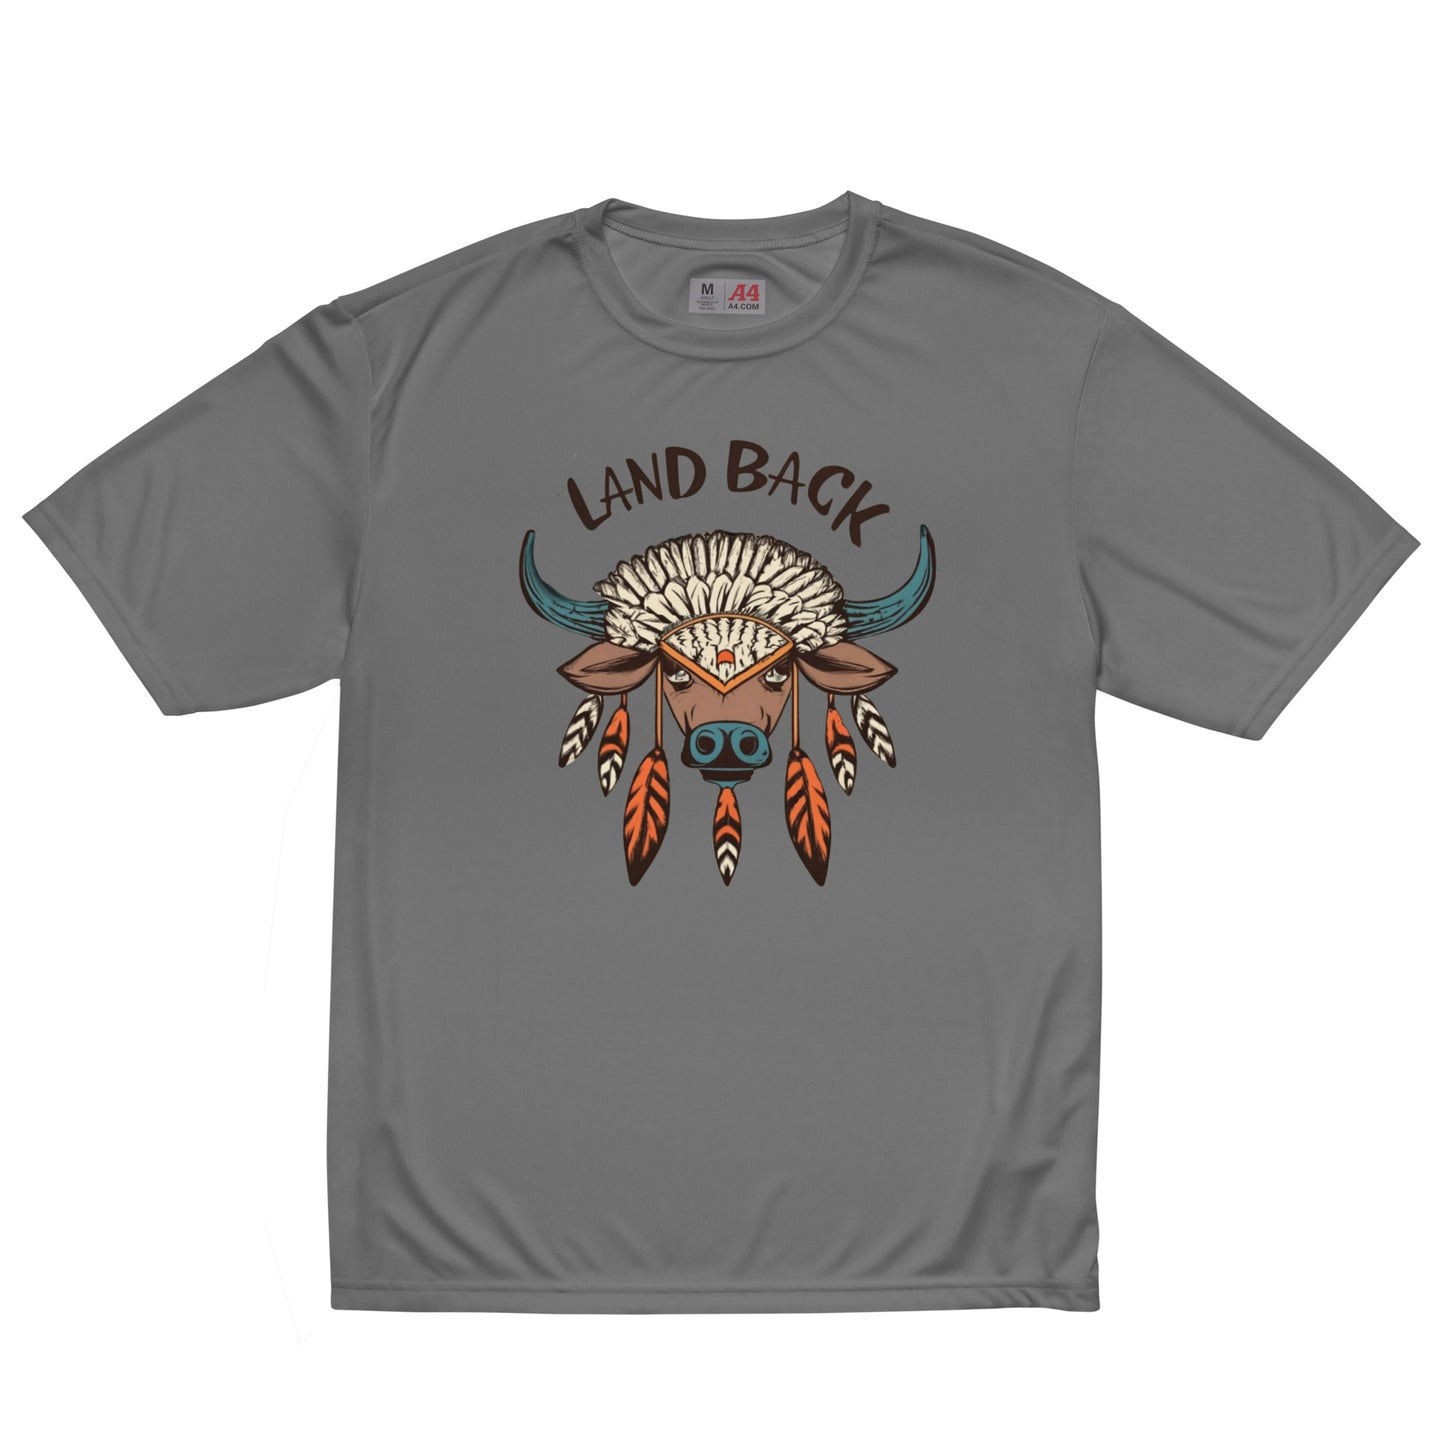 Buffalo Medicine - Land Back- Unisex performance crew neck t-shirt